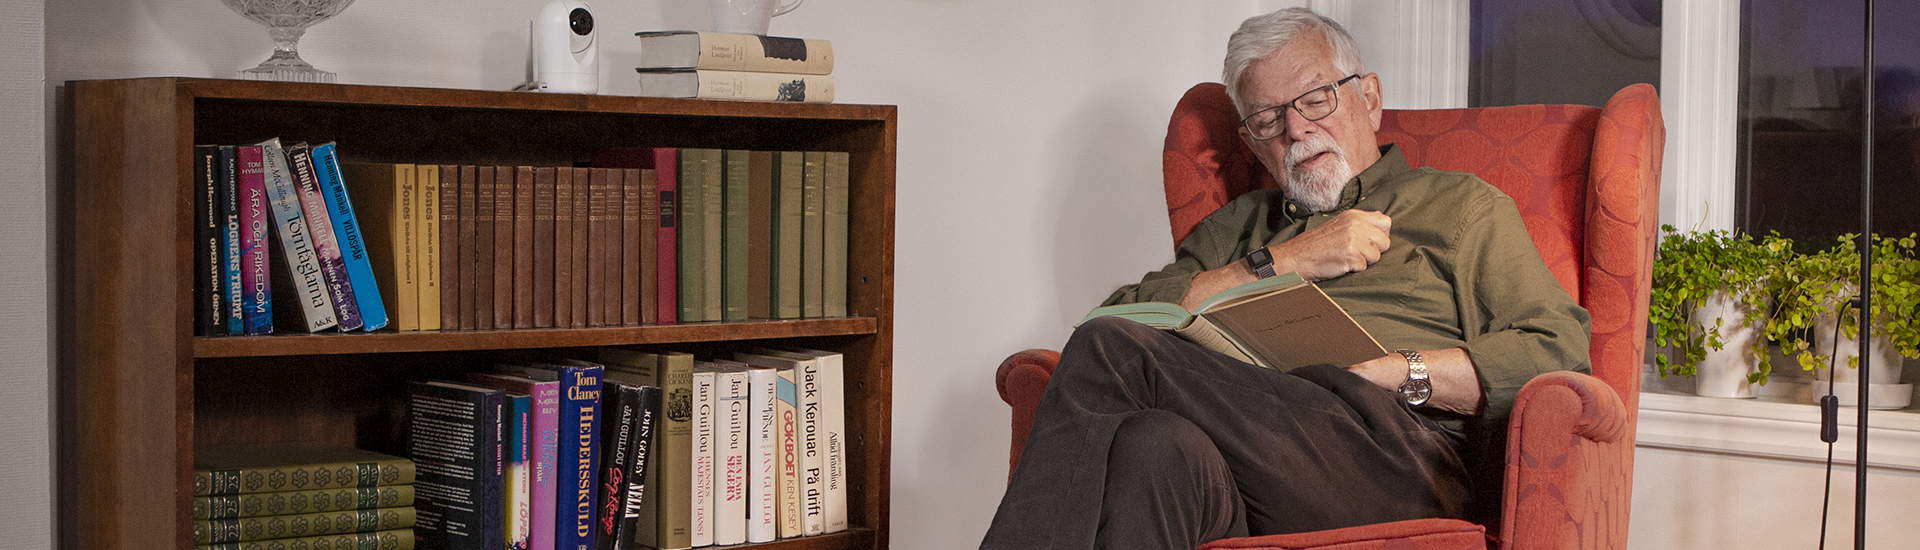 Äldre man i fåtölj som läser och en Doro Visit-kamera ovanpå en bokhylla